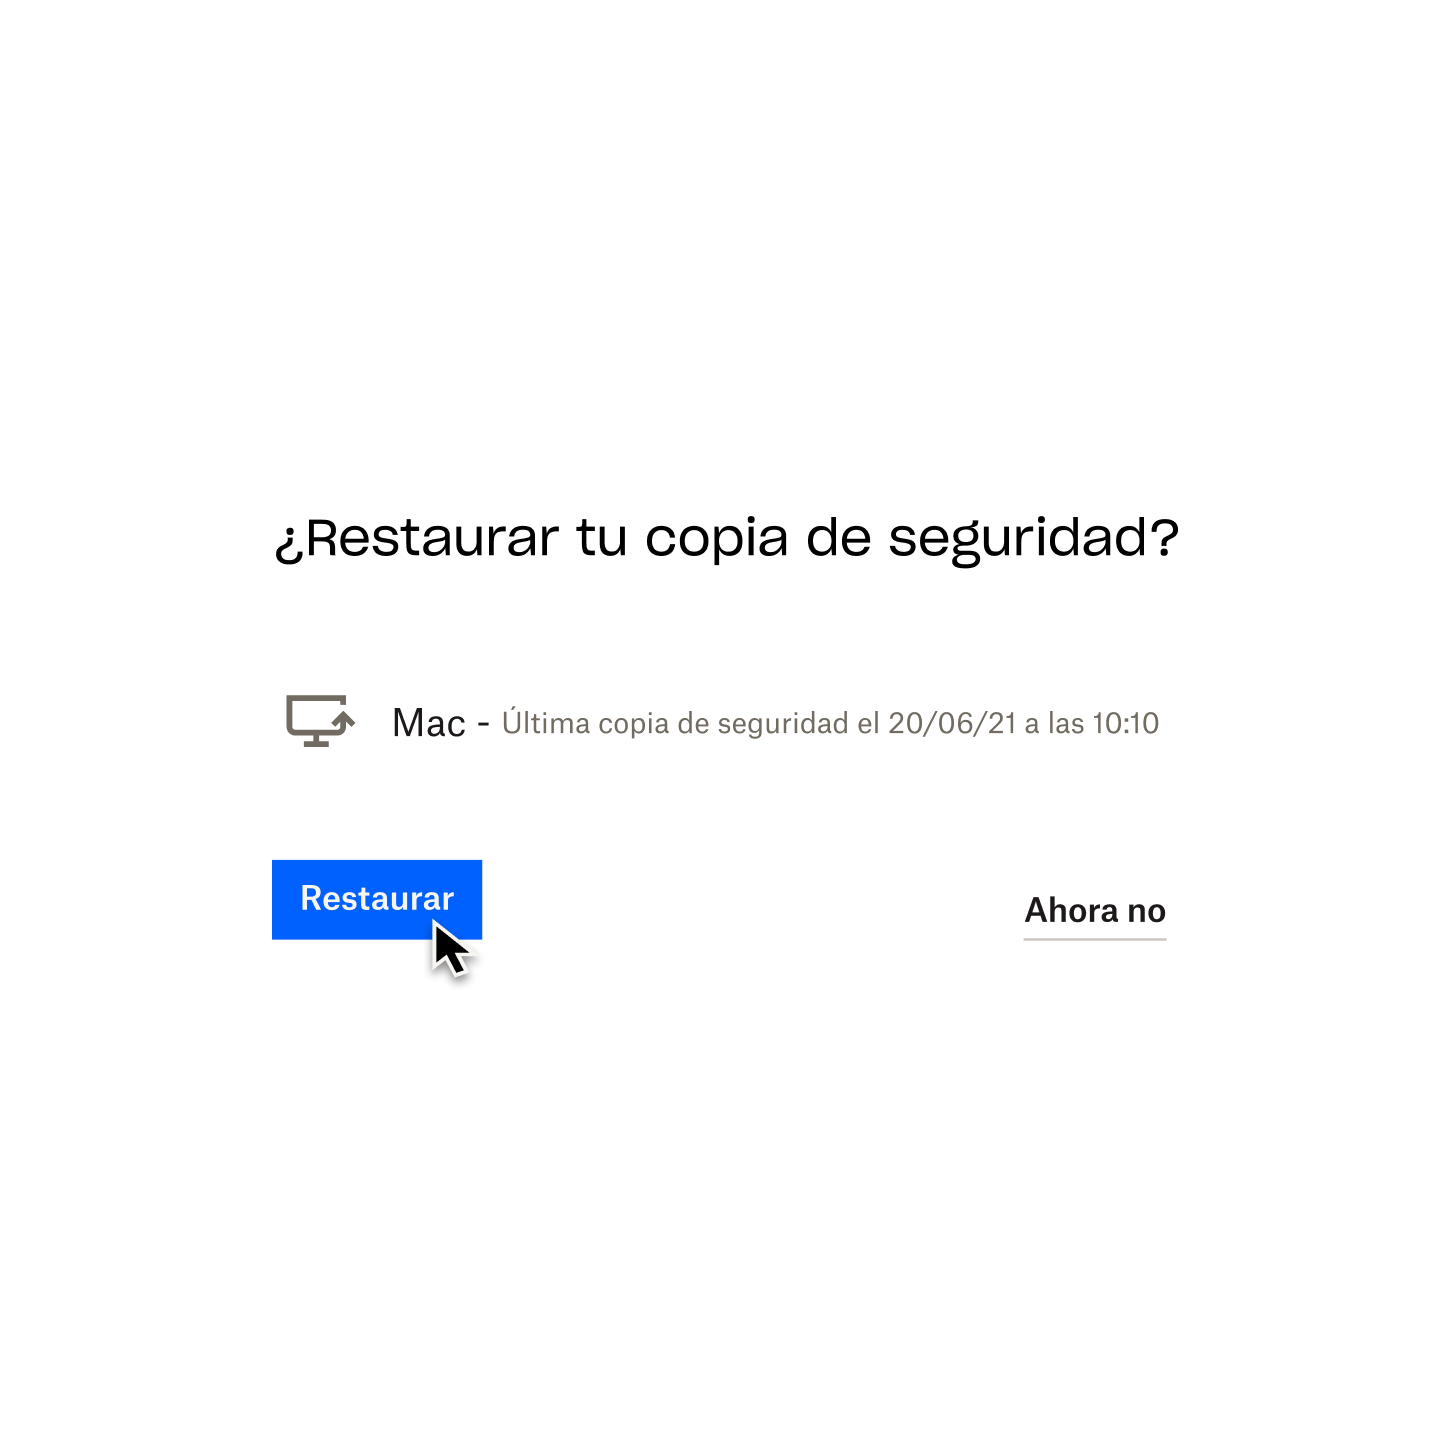 Mensaje de Dropbox Backup en el que se pregunta al usuario si quiere realizar una restauración desde la copia de seguridad. Se muestra un cursor sobre el botón "Restaurar".